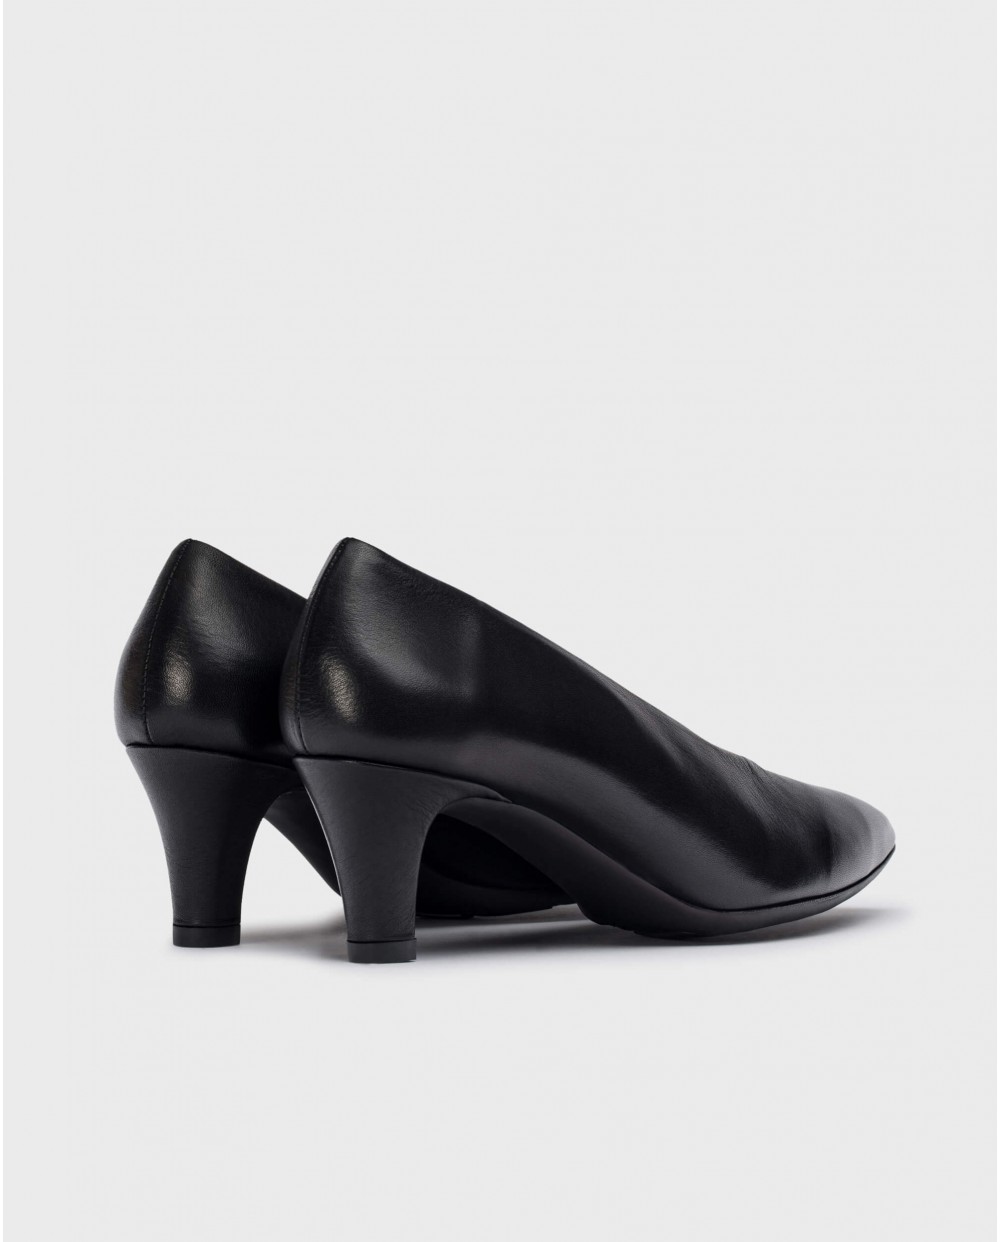 Black Trui heeled shoes